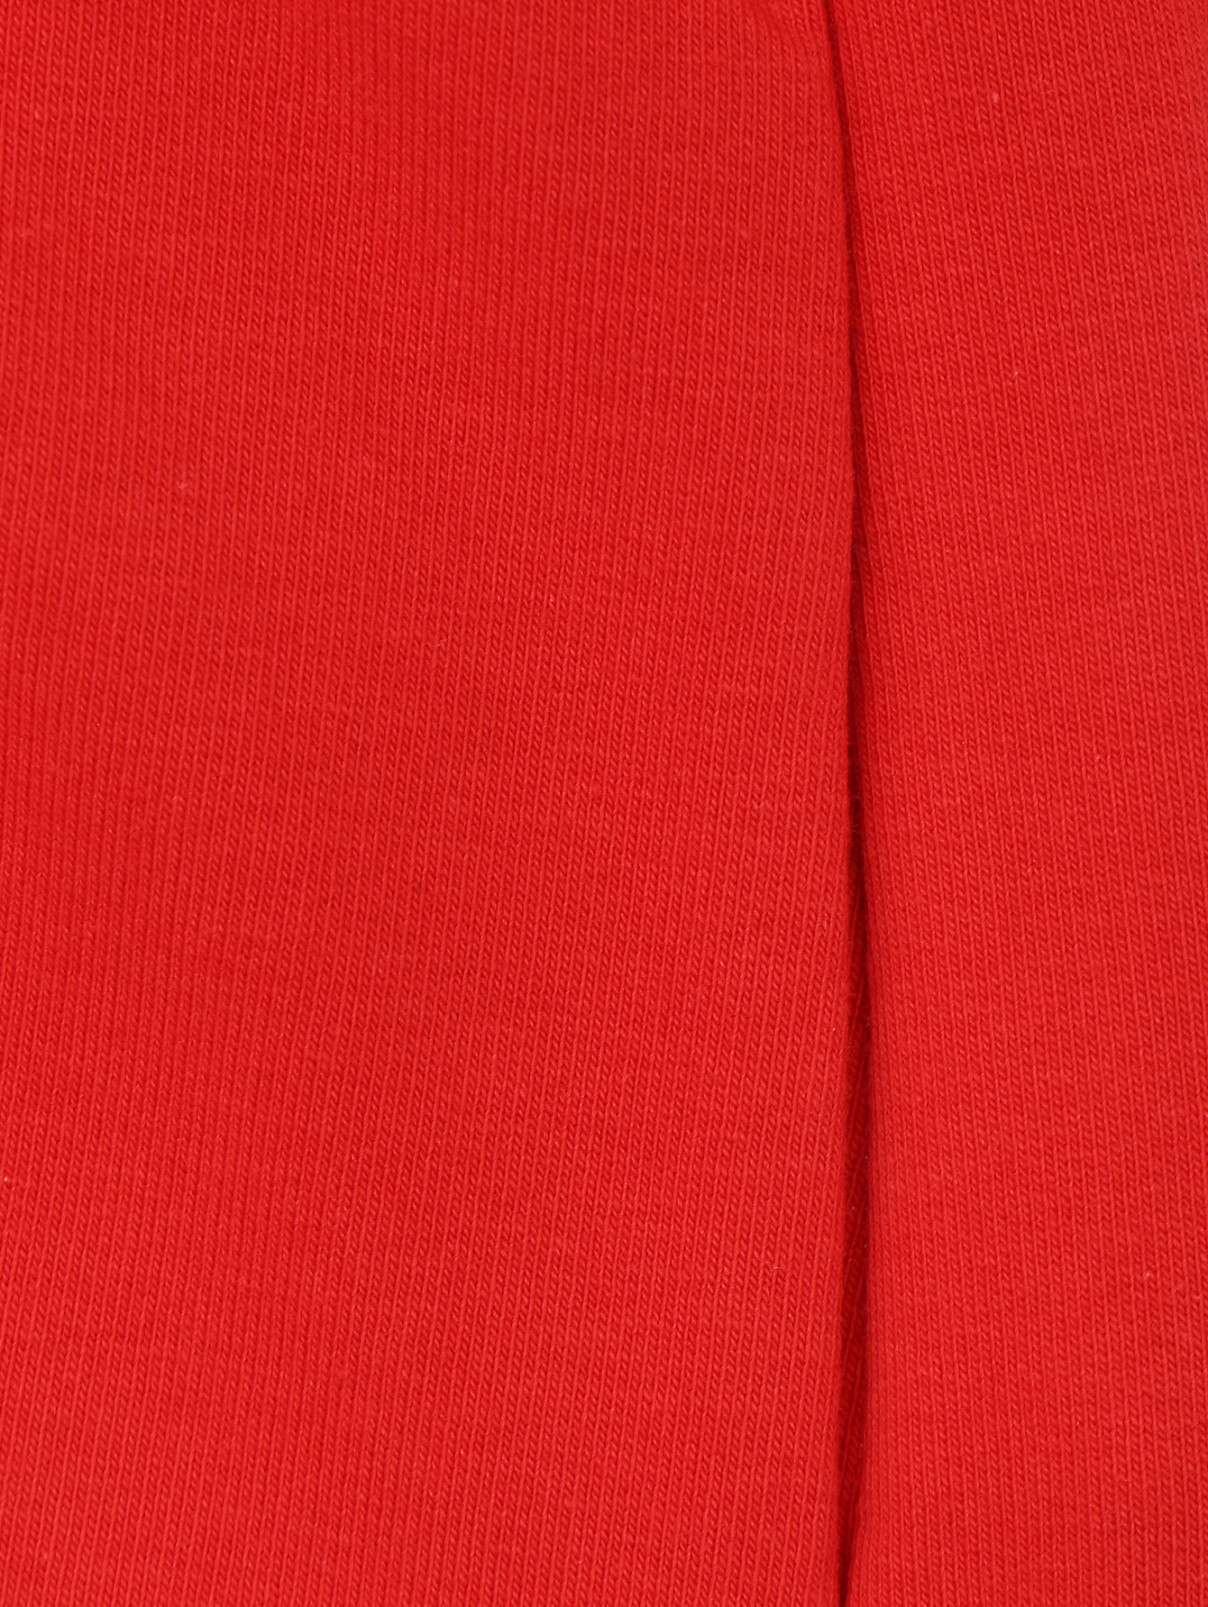 Трикотажные шорты с принтом и вышивкой Moschino  –  Деталь1  – Цвет:  Красный